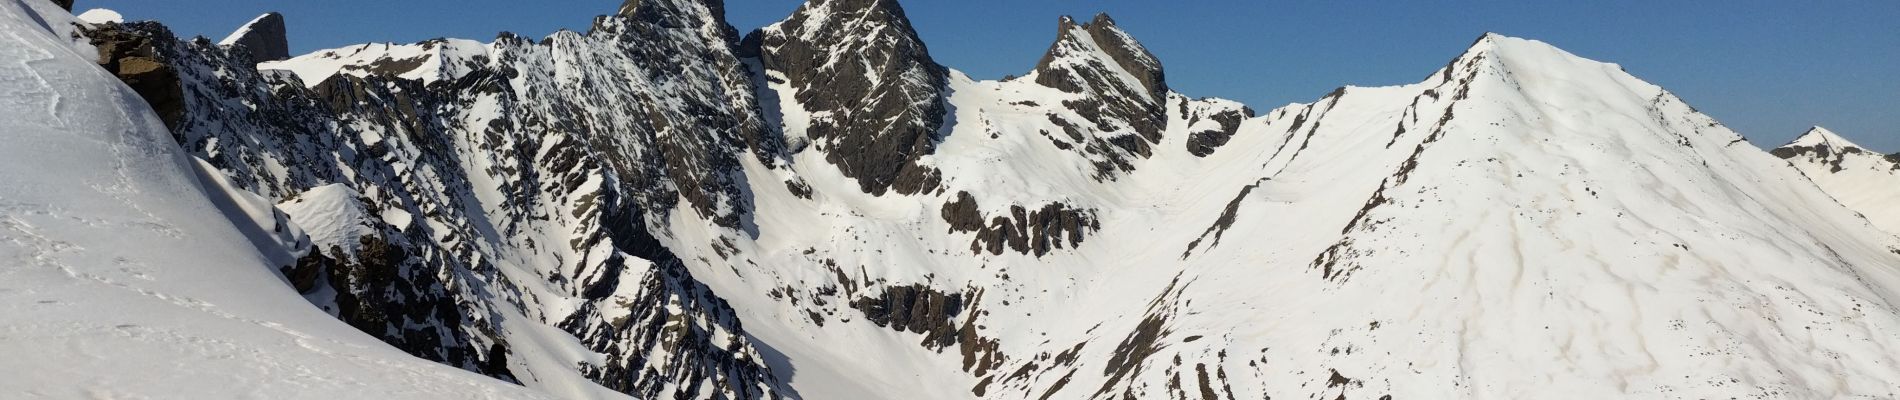 Percorso Sci alpinismo Valloire - PT 2973 sur la crête d'argentière - Photo